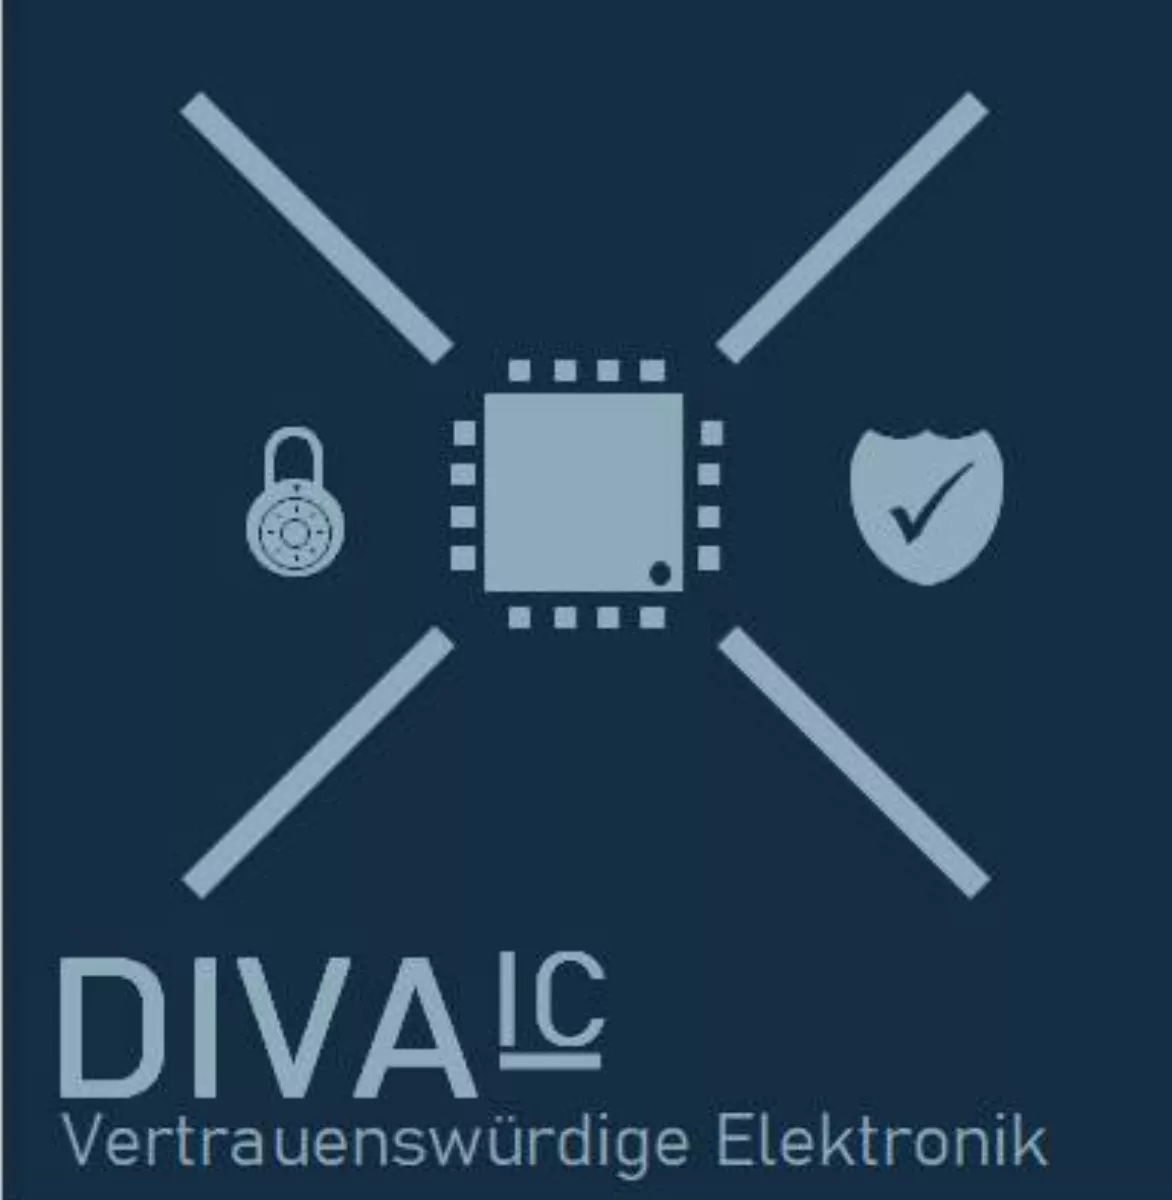 Forschungsprojekt VE-DIVA-IC